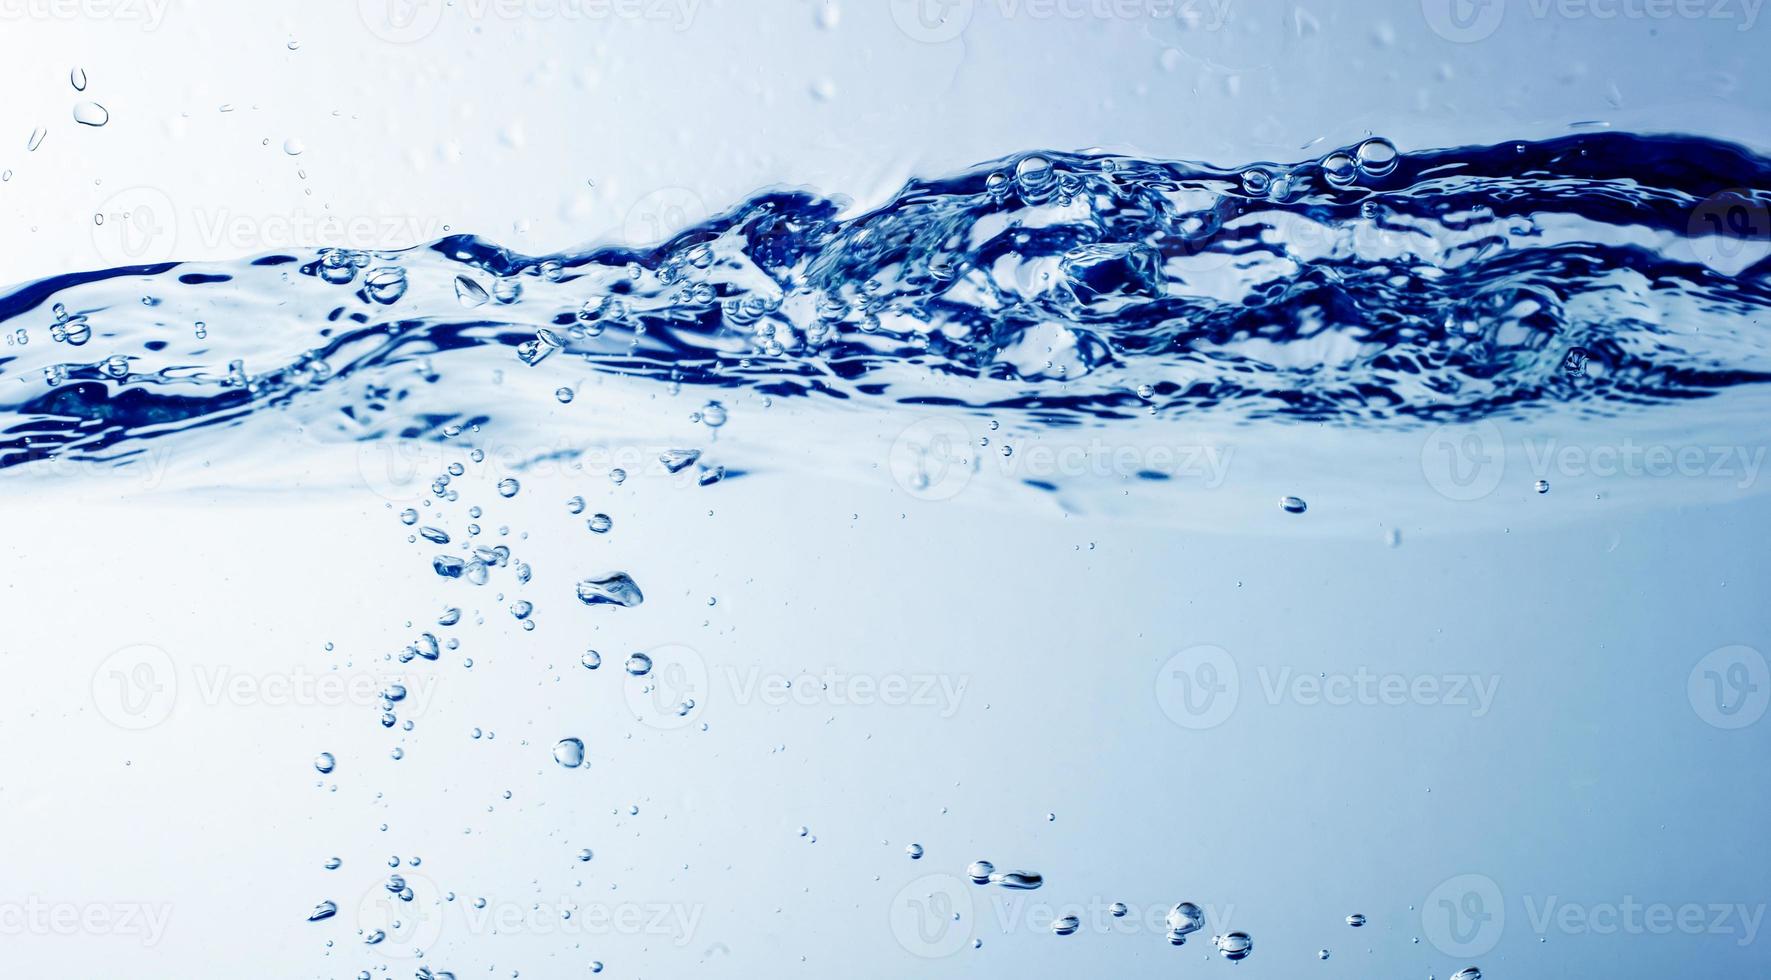 eau et bulles sur le fond bleu de l'eau photo